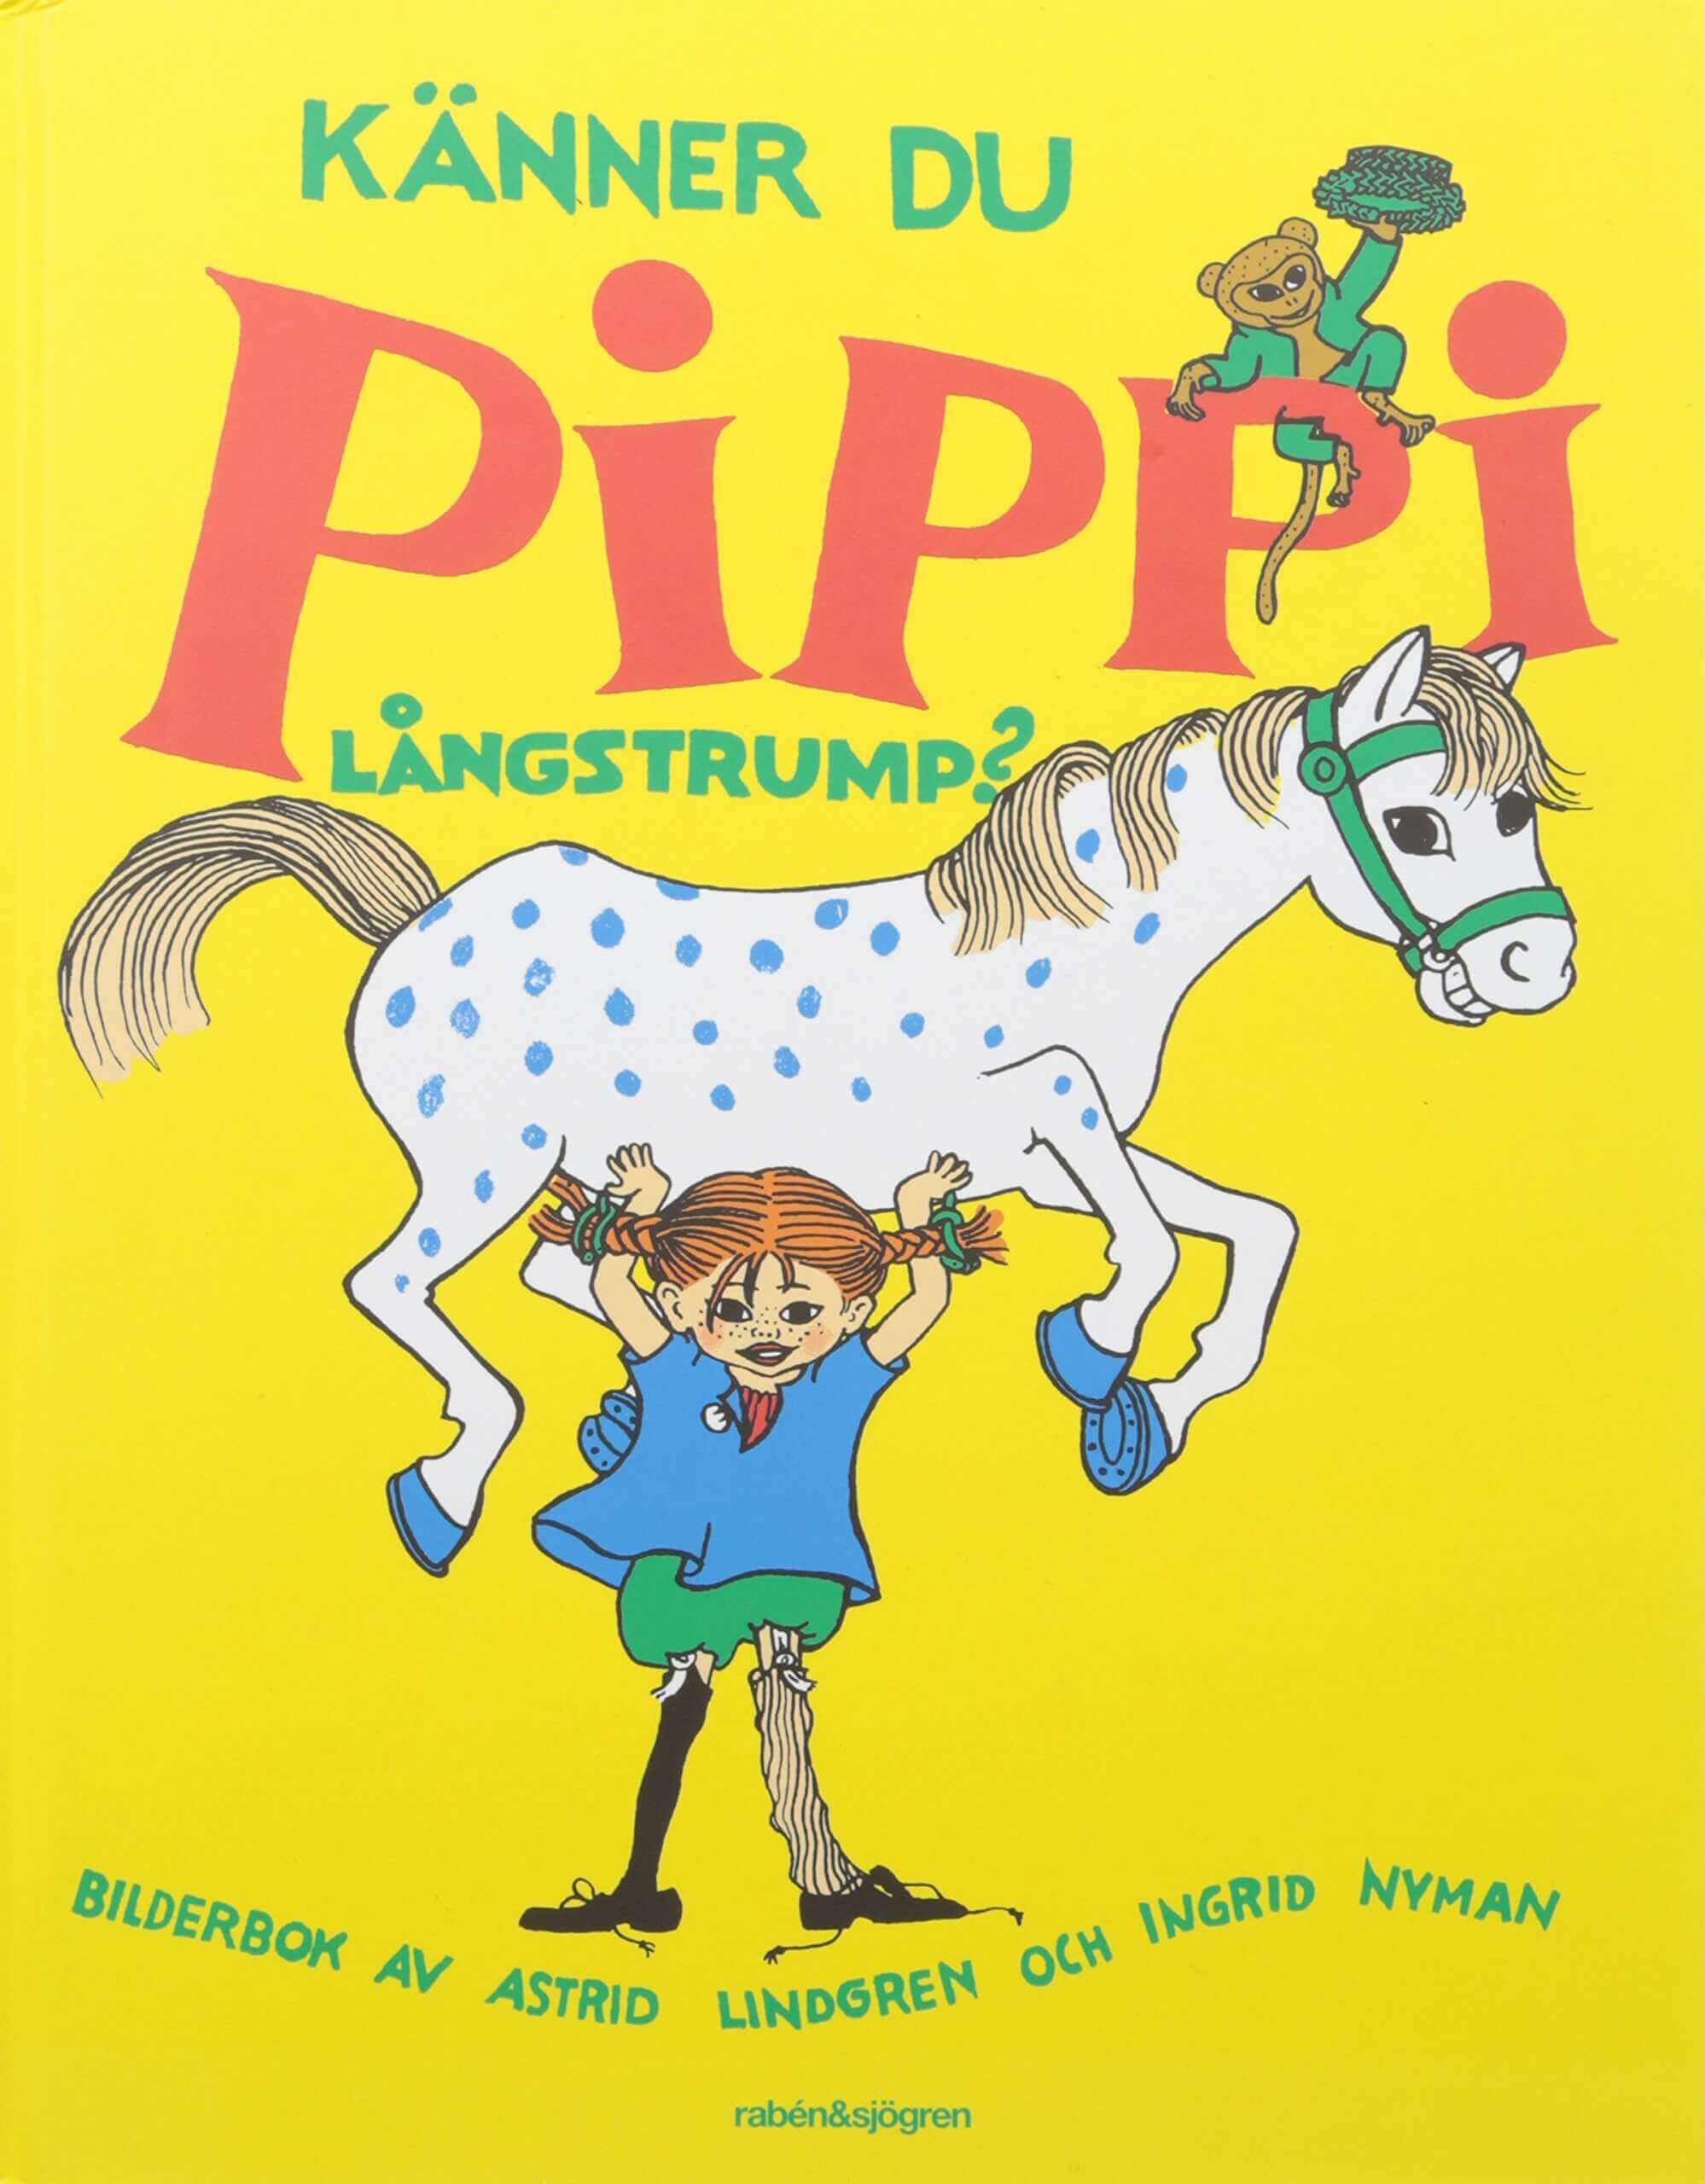 Pippi Långstrump av Astrid Lindgren. Pippis vänner var Tommy och Annika